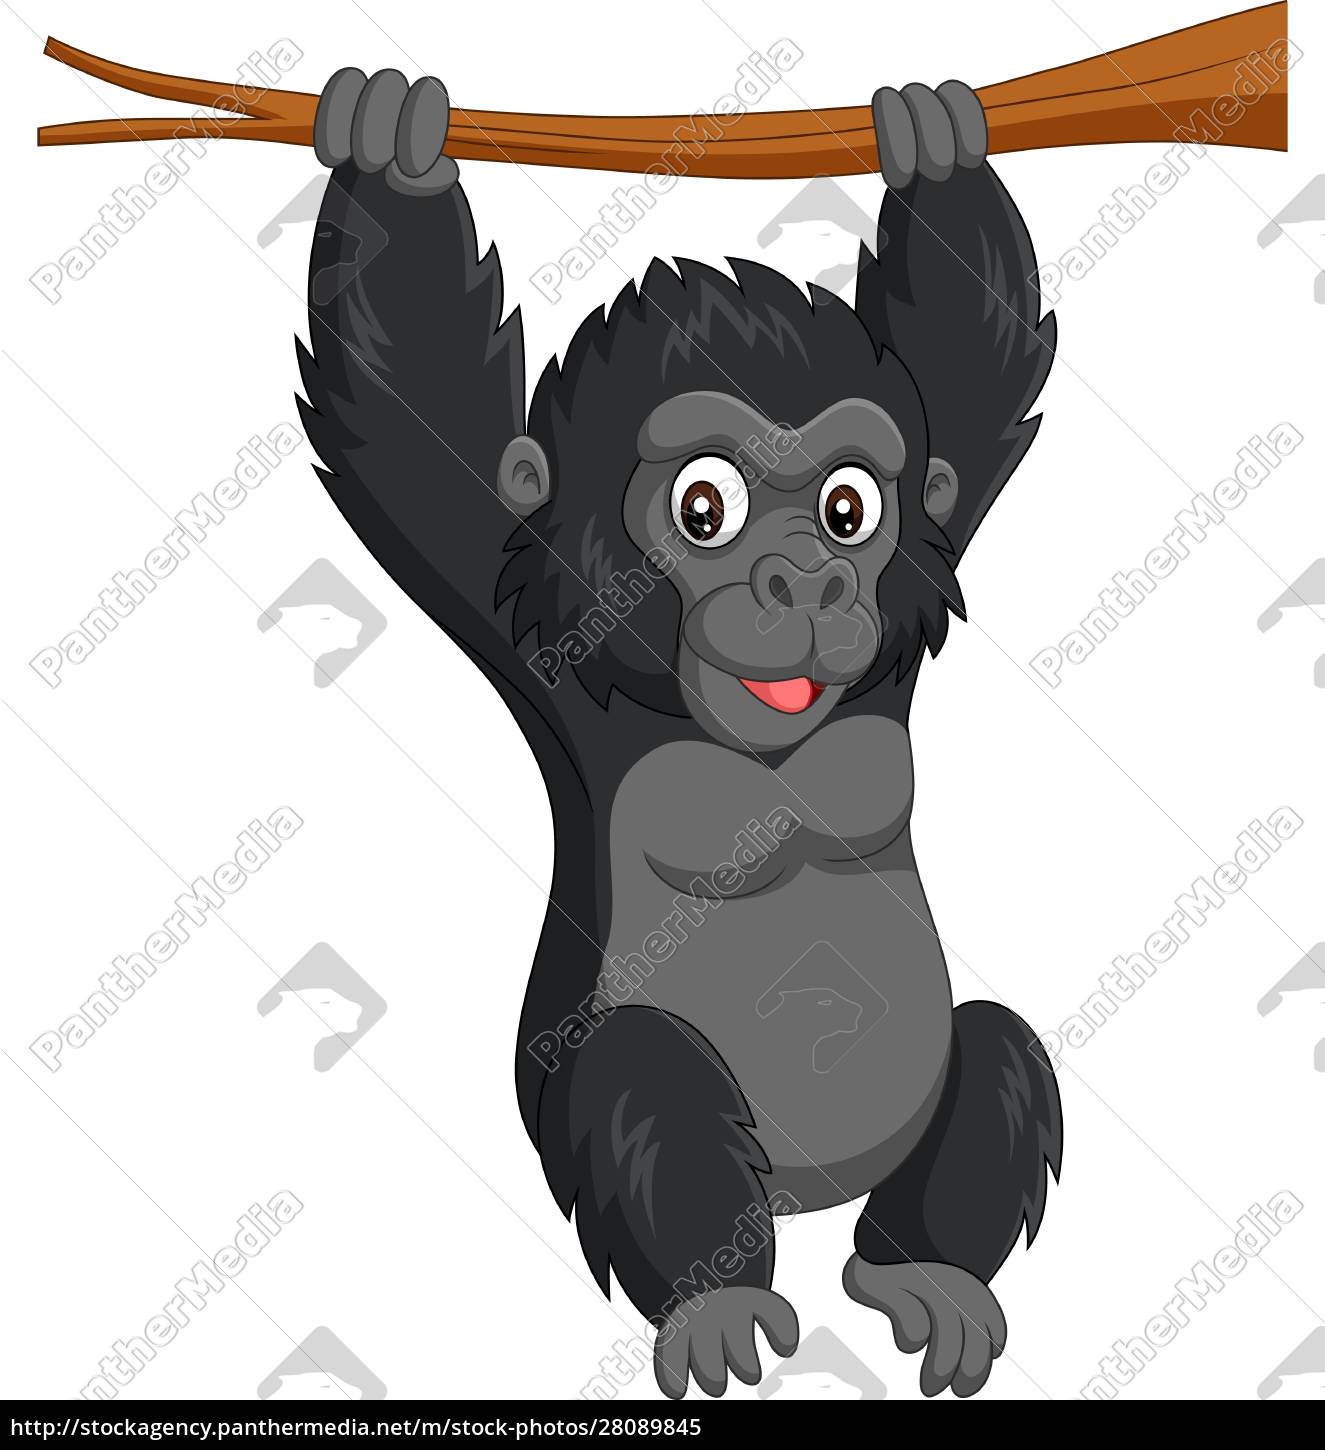 Desenho de Gorila bebé pintado e colorido por Usuário não registrado o dia  19 de Janeiro do 2016